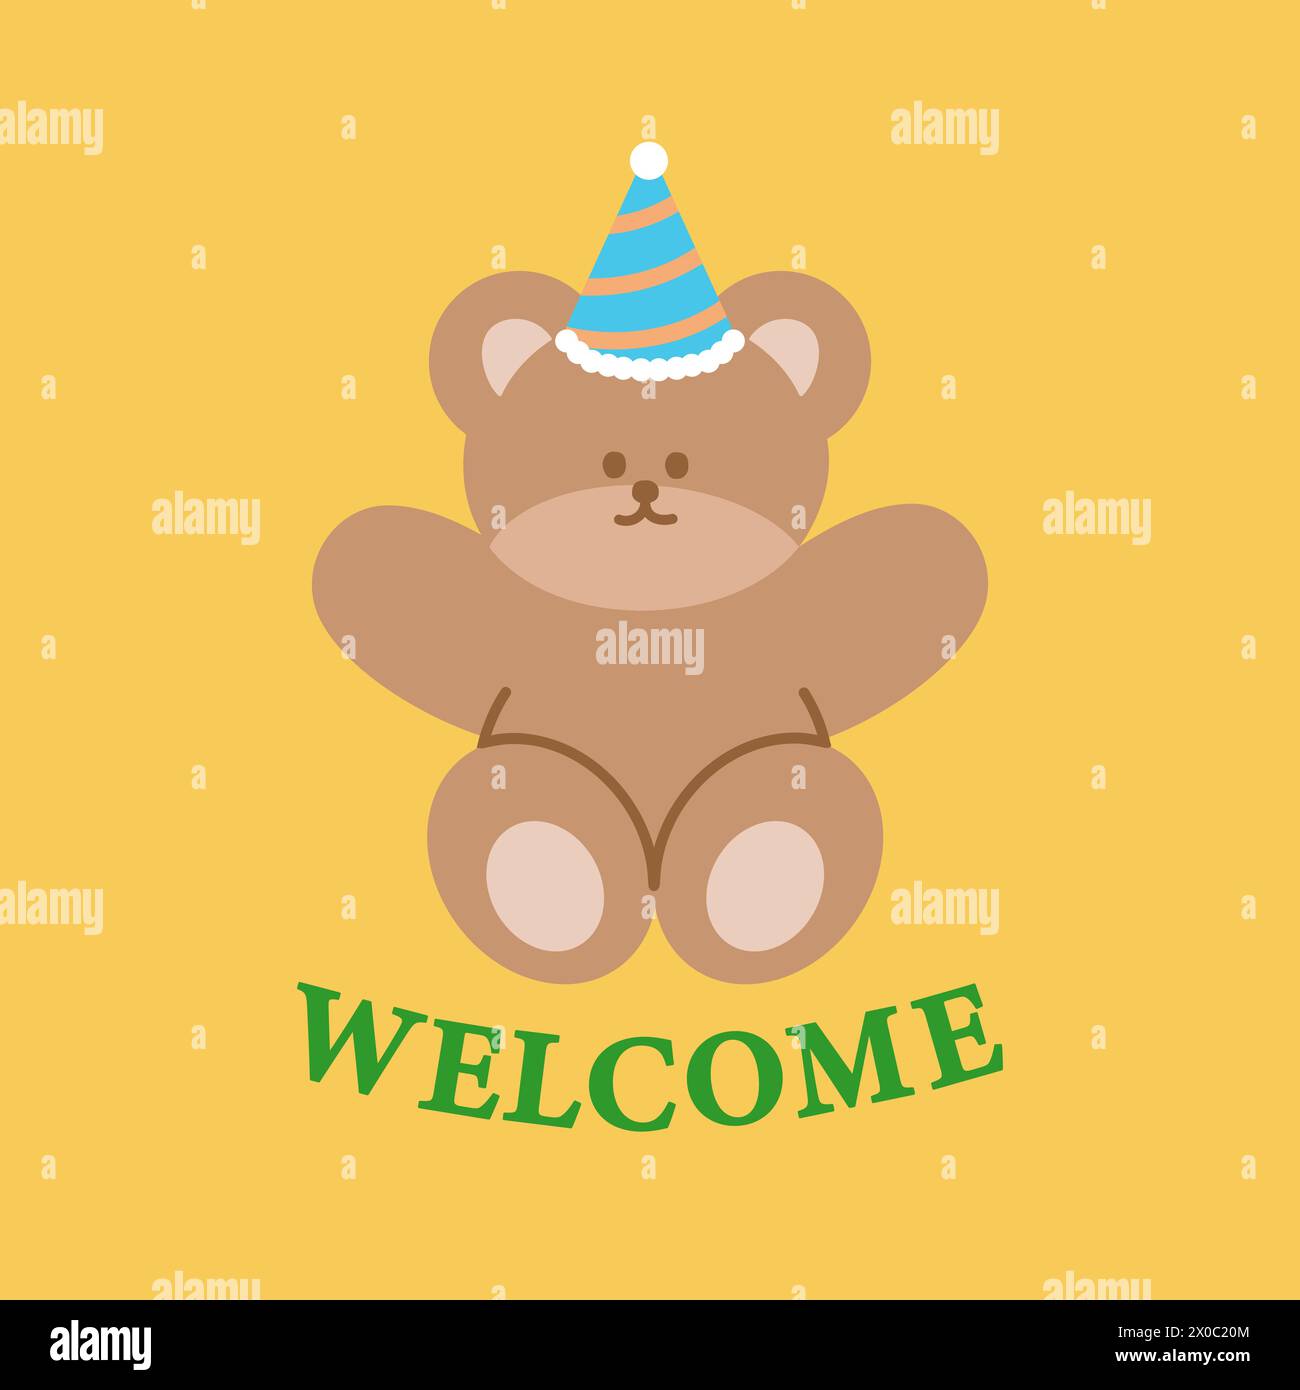 Illustration von Teddybär, Partyhut und BEGRÜSSUNGSBRIEFEN auf einem pastellgelben Hintergrund für Einladungskarte, Druck, Tiertapete, Zeichentrick, Zoo Stock Vektor